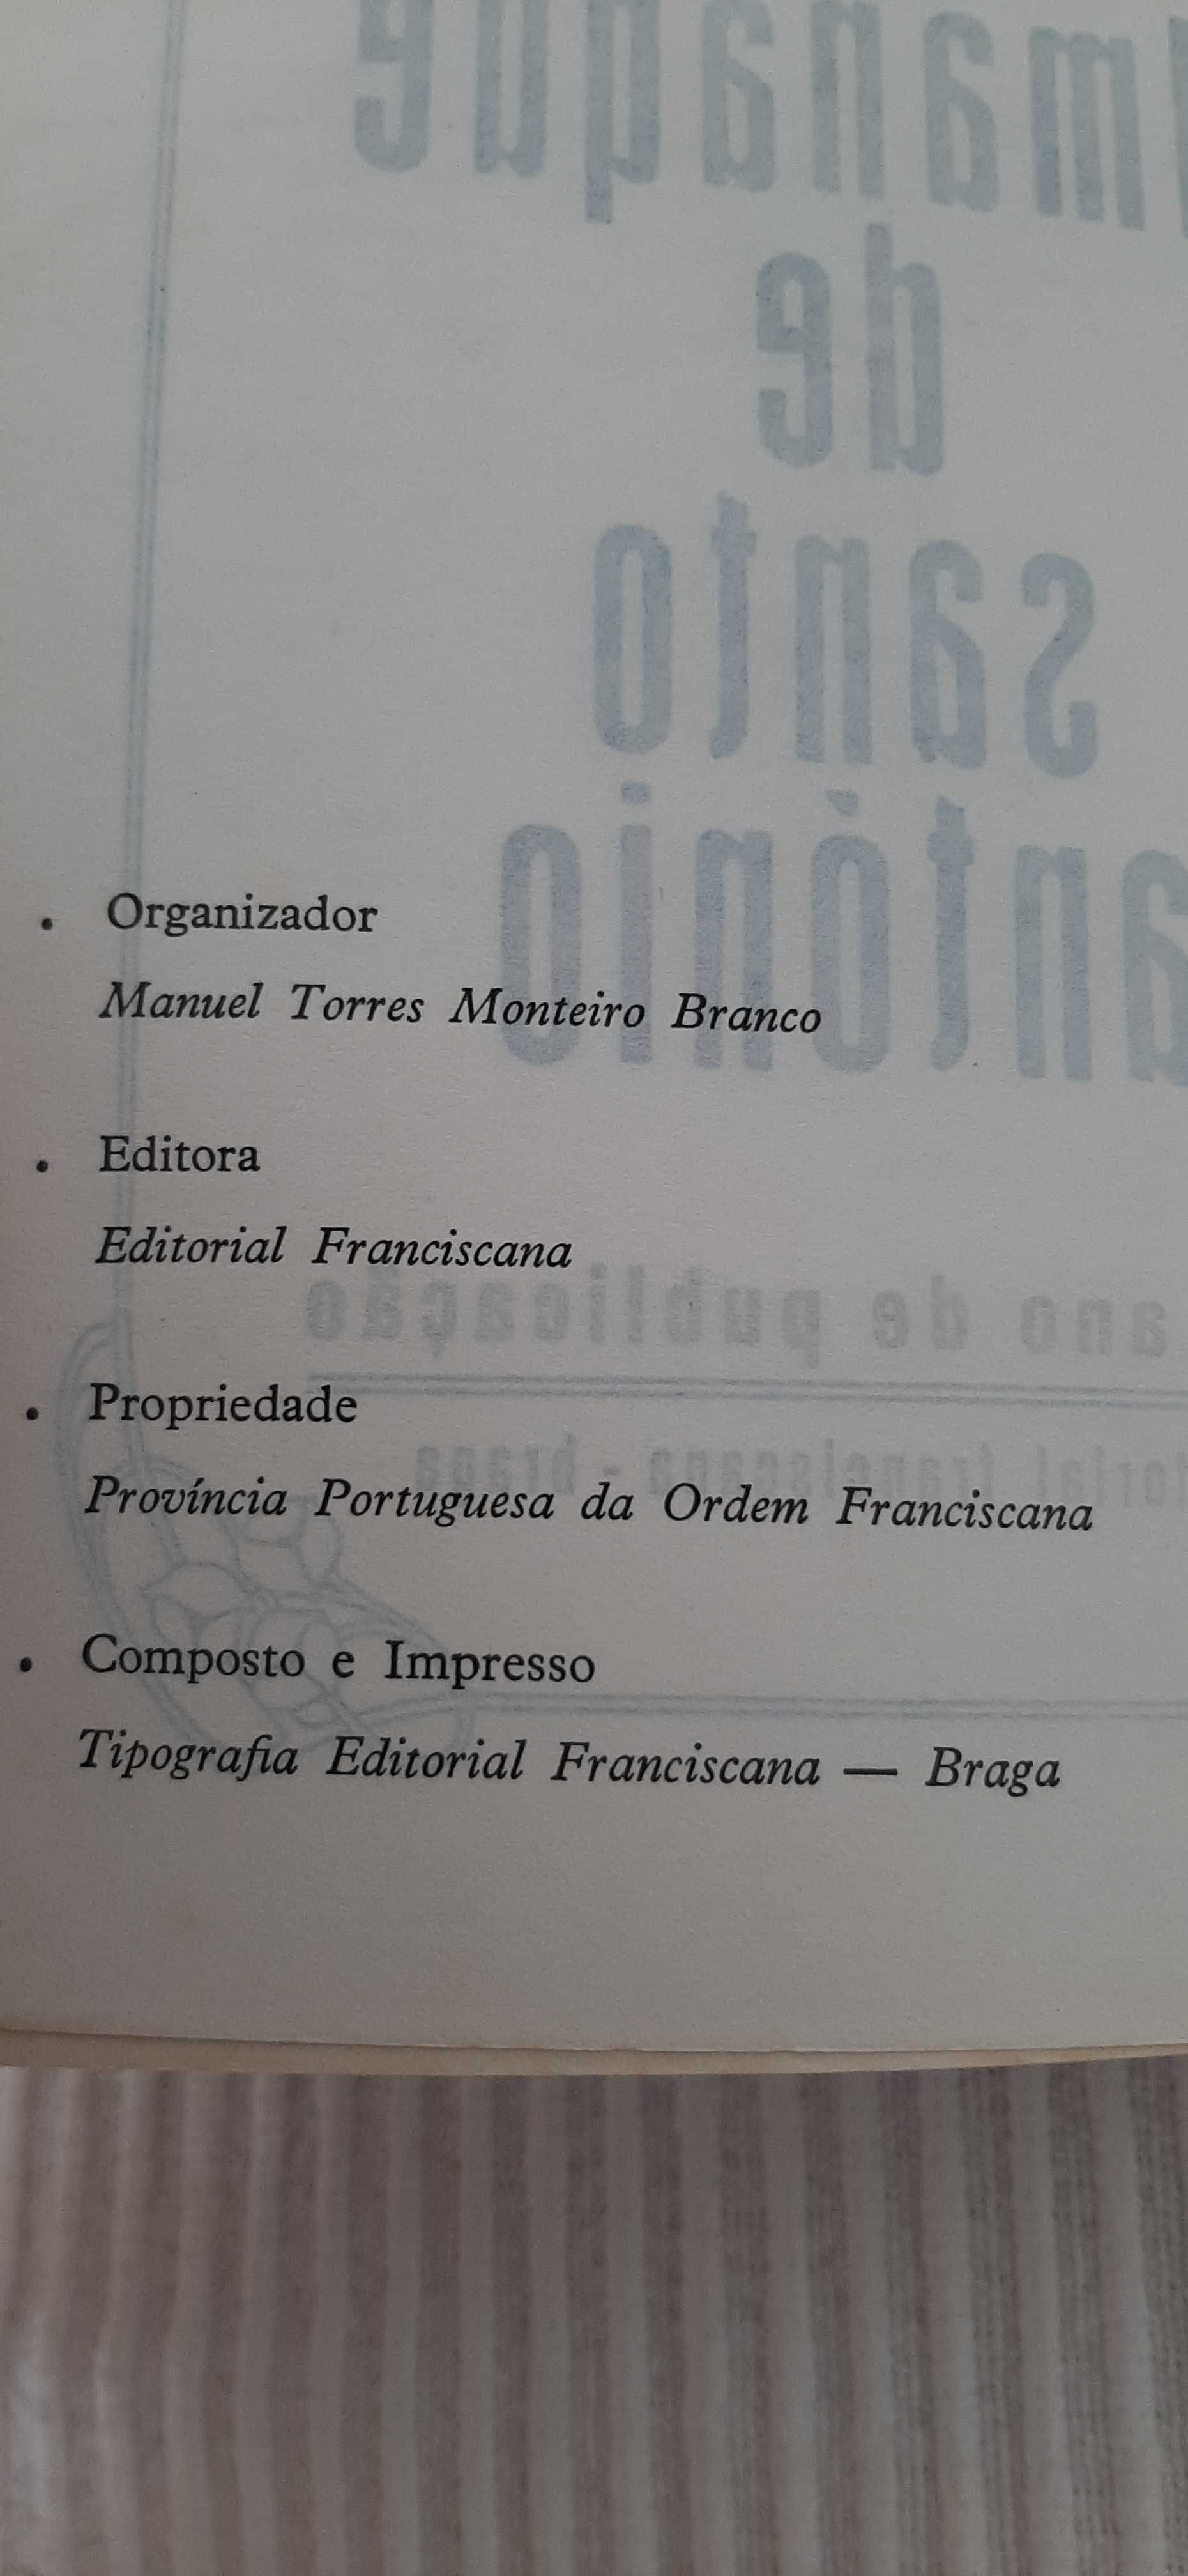 Almanaque de Santo António para 1981